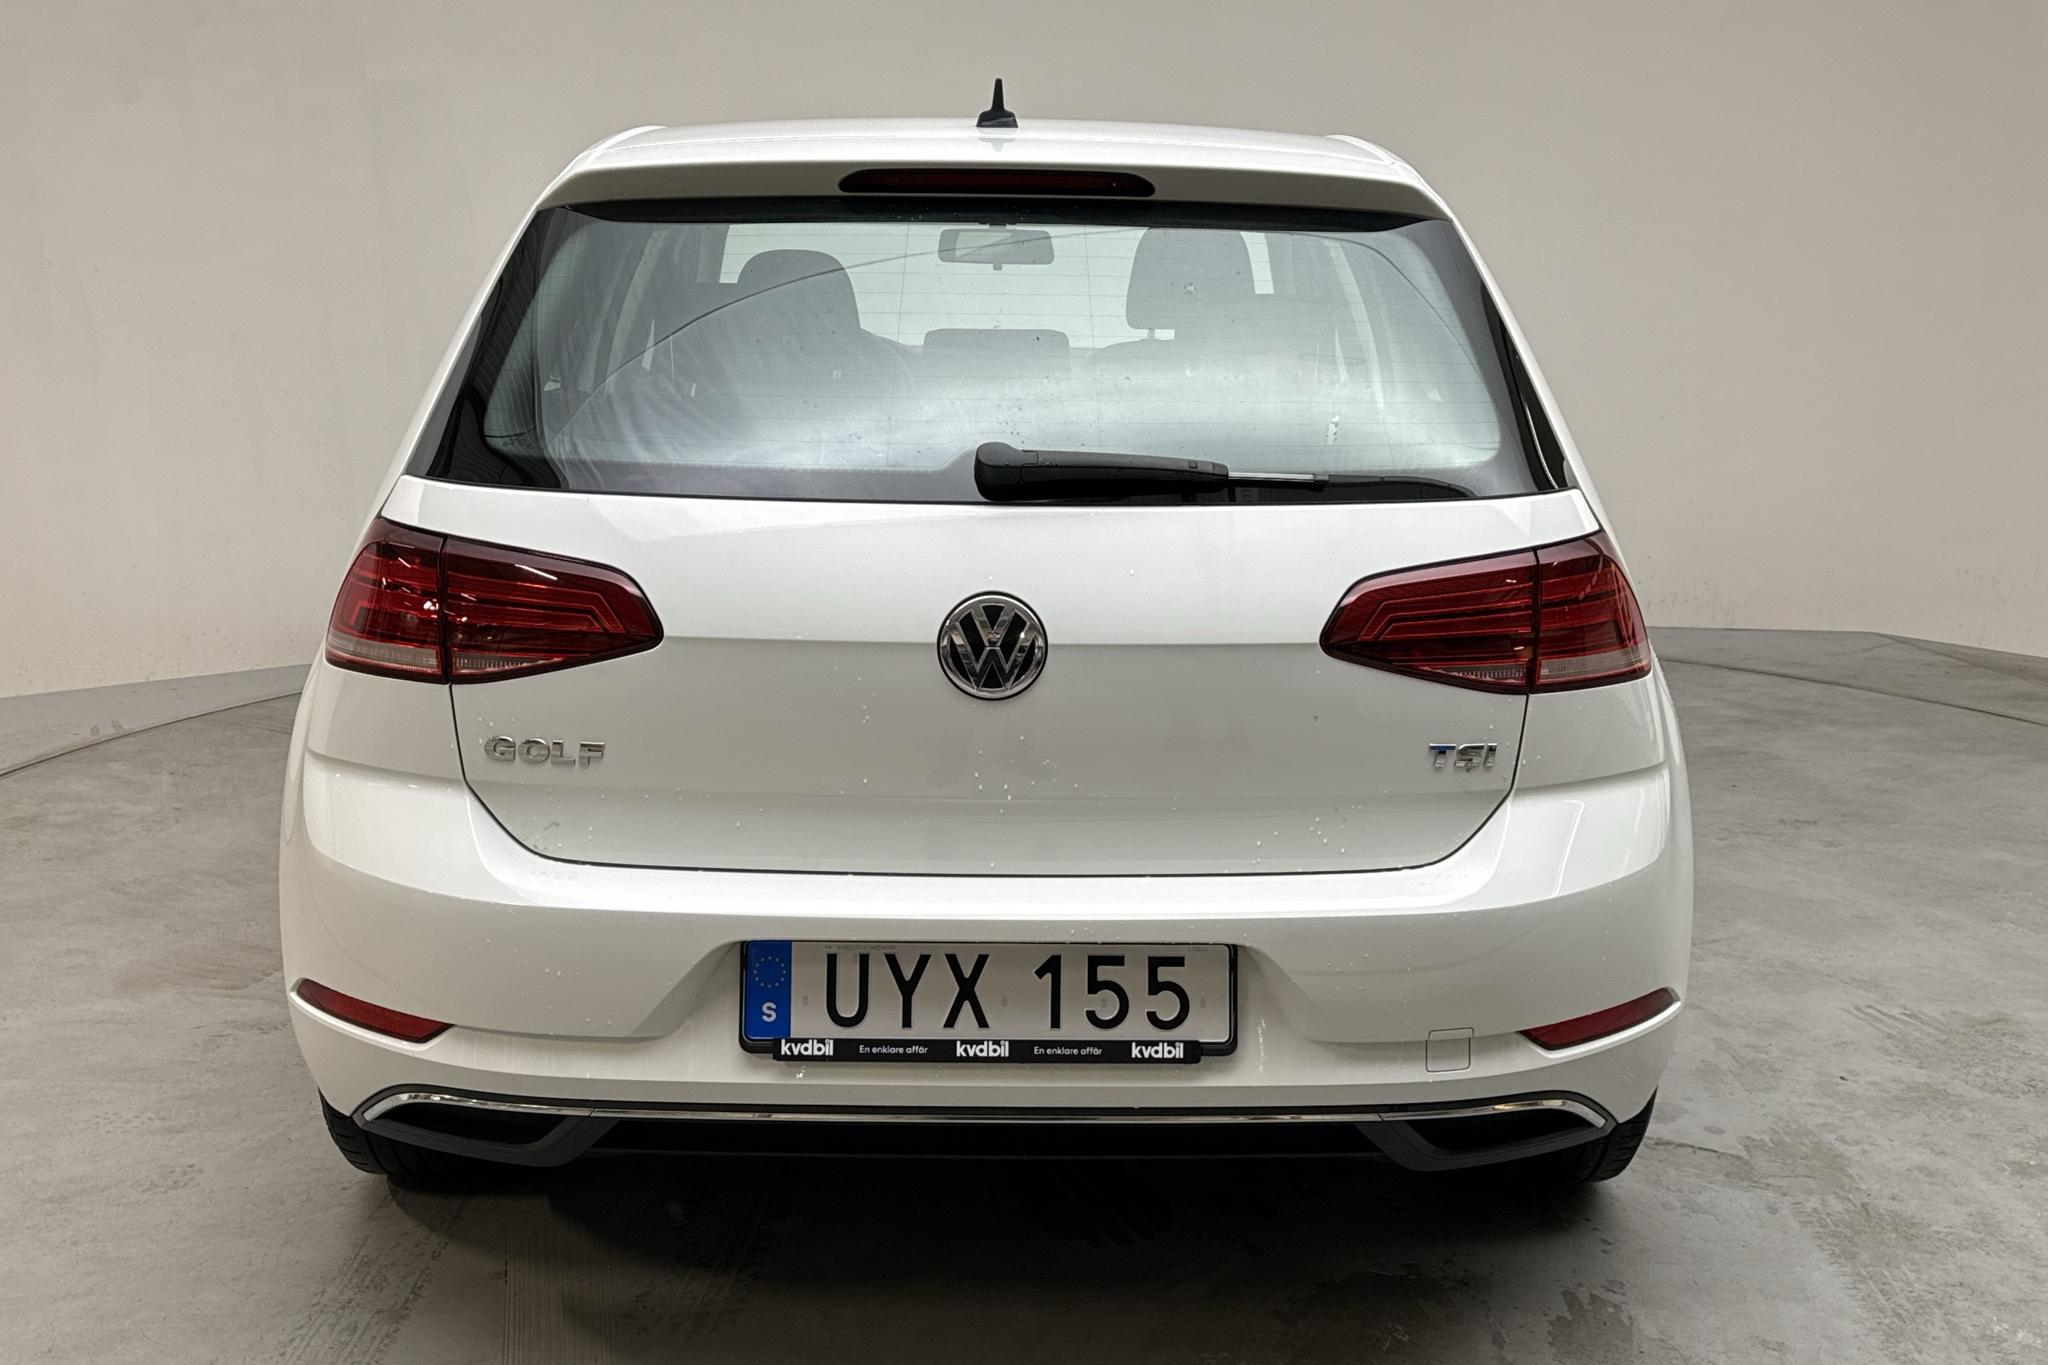 VW Golf VII 1.0 TSI 5dr (110hk) - 94 750 km - Manual - white - 2018